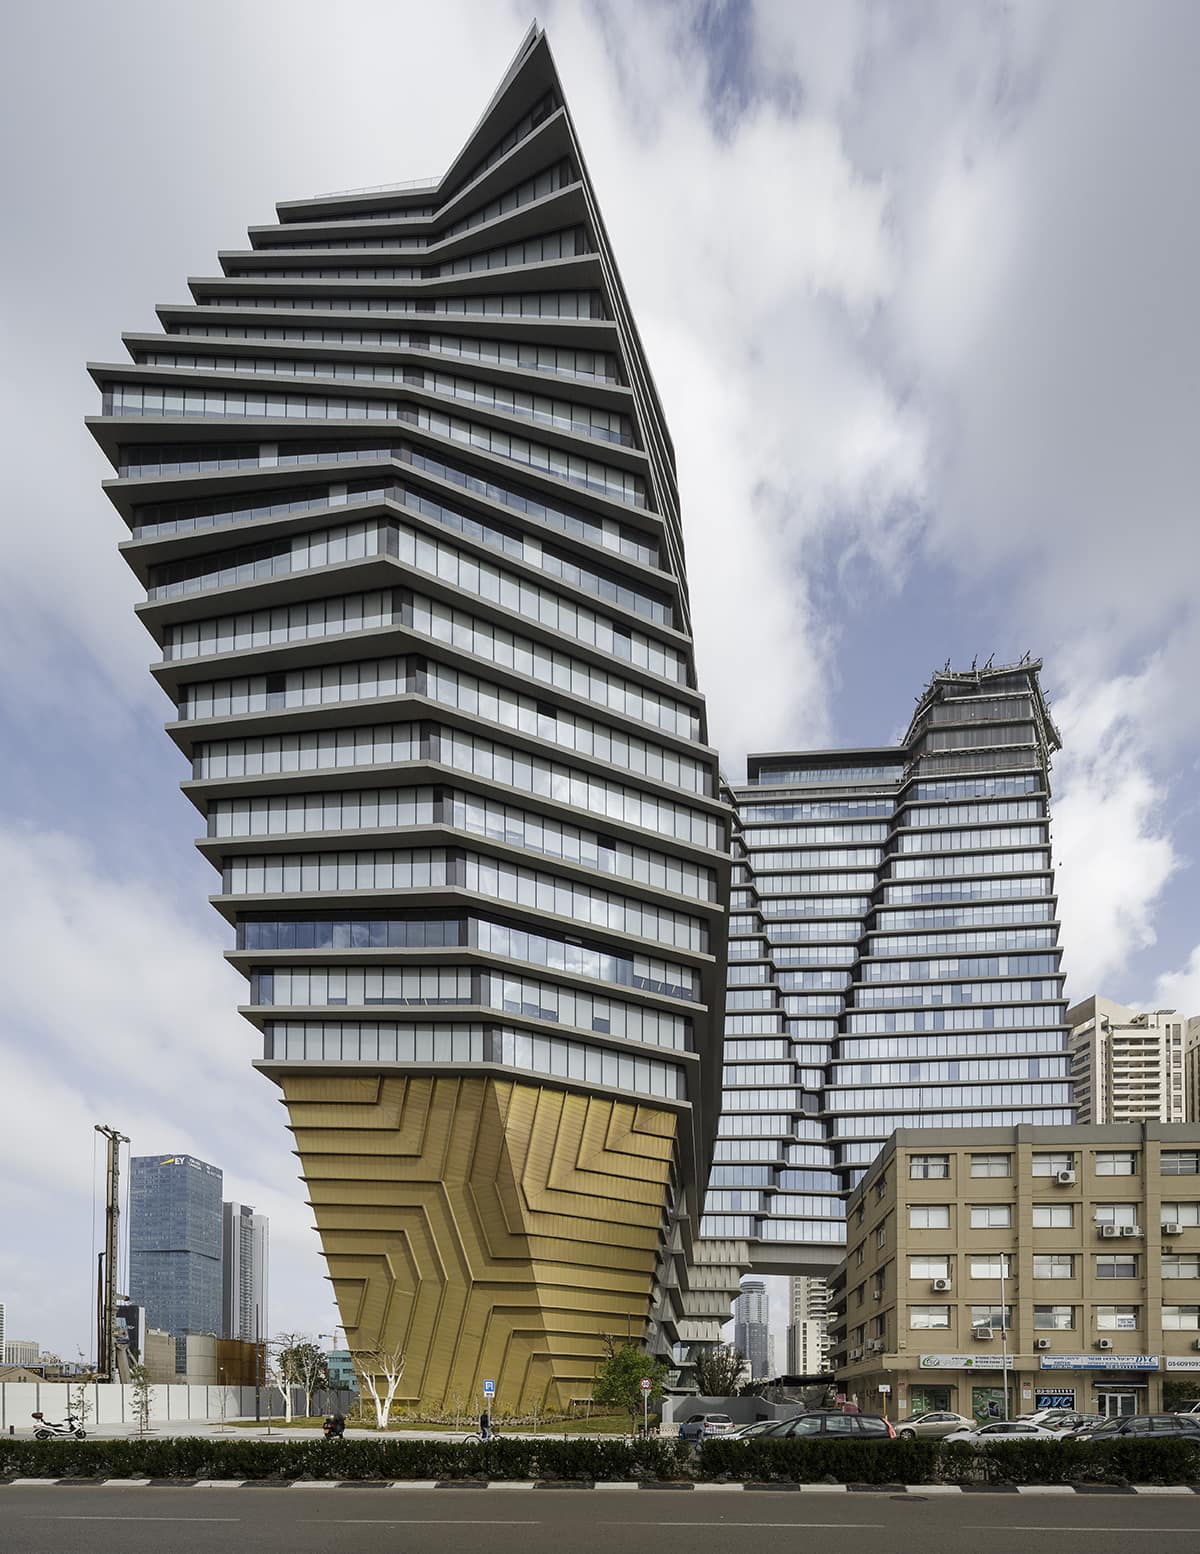 The ToHa building in Tel Aviv